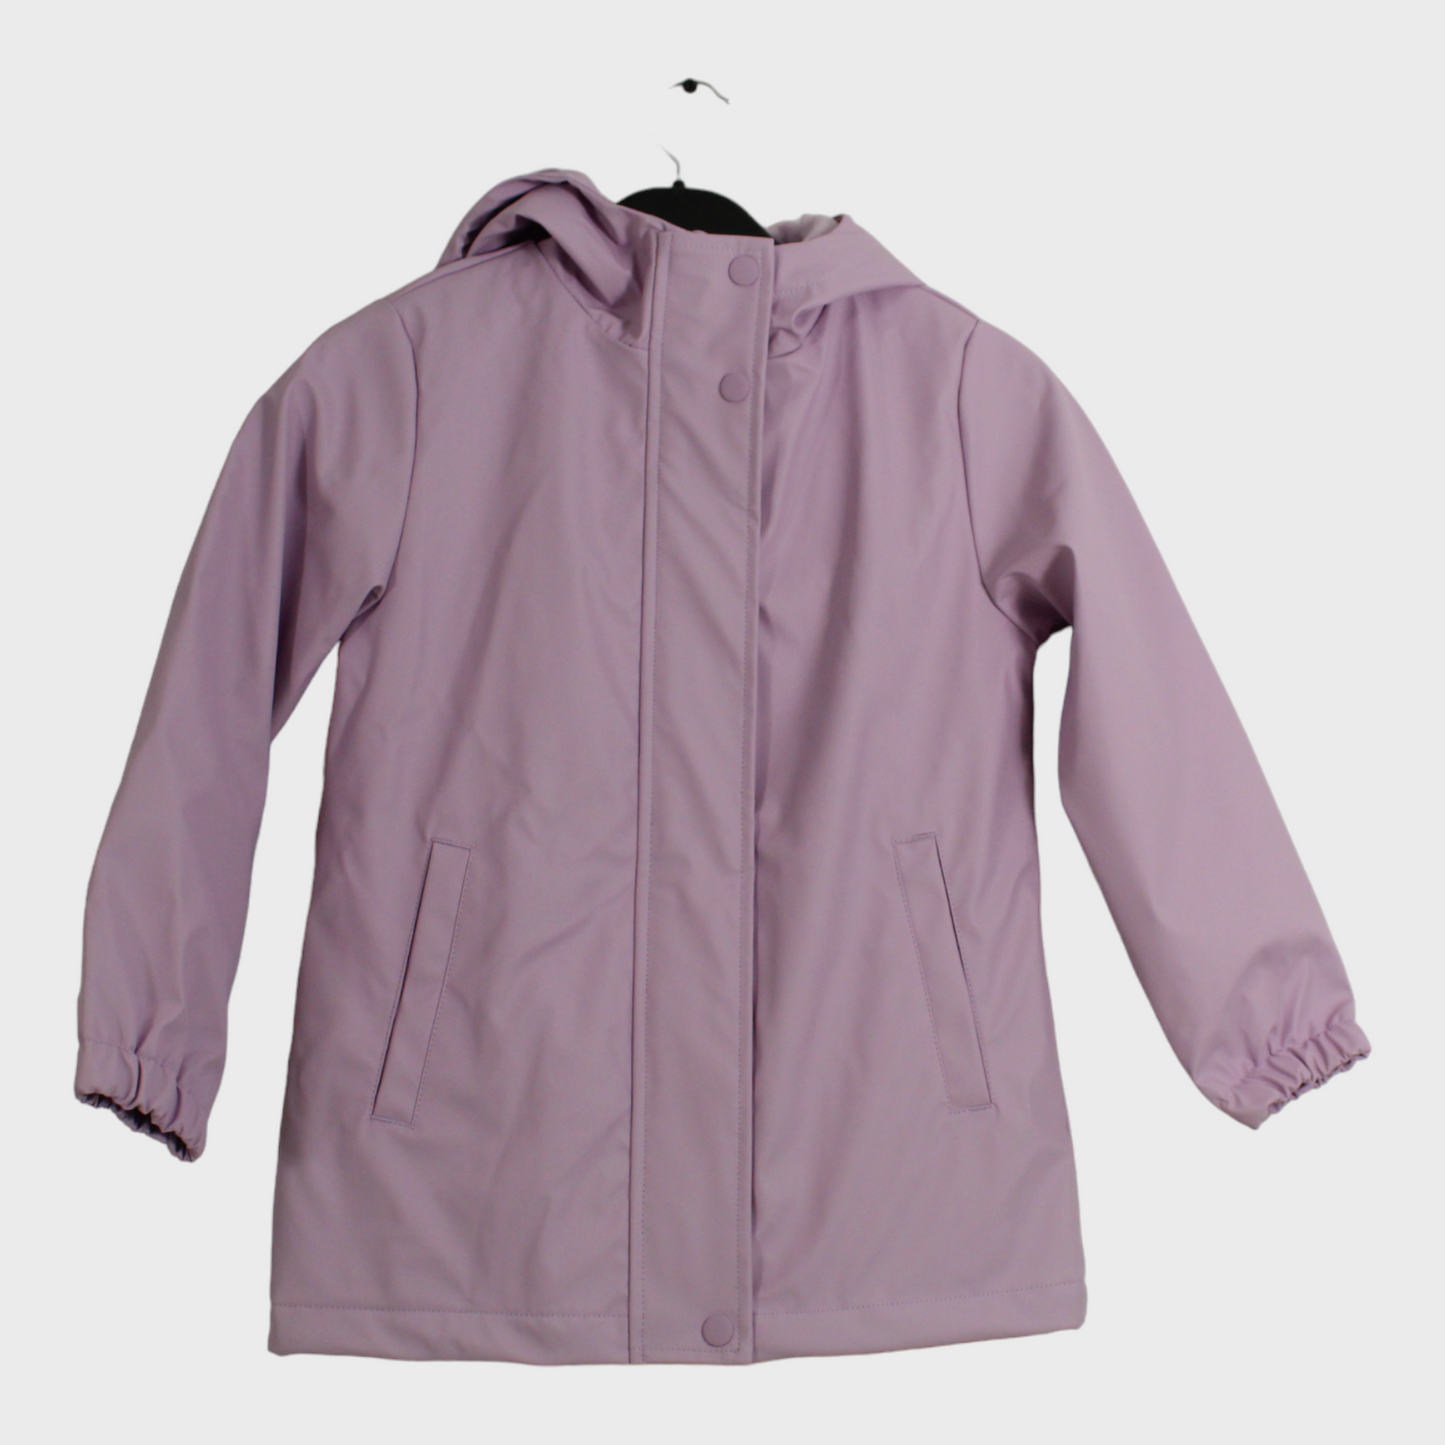 Girls Fleece Lined Lilac Waterproof Jacket